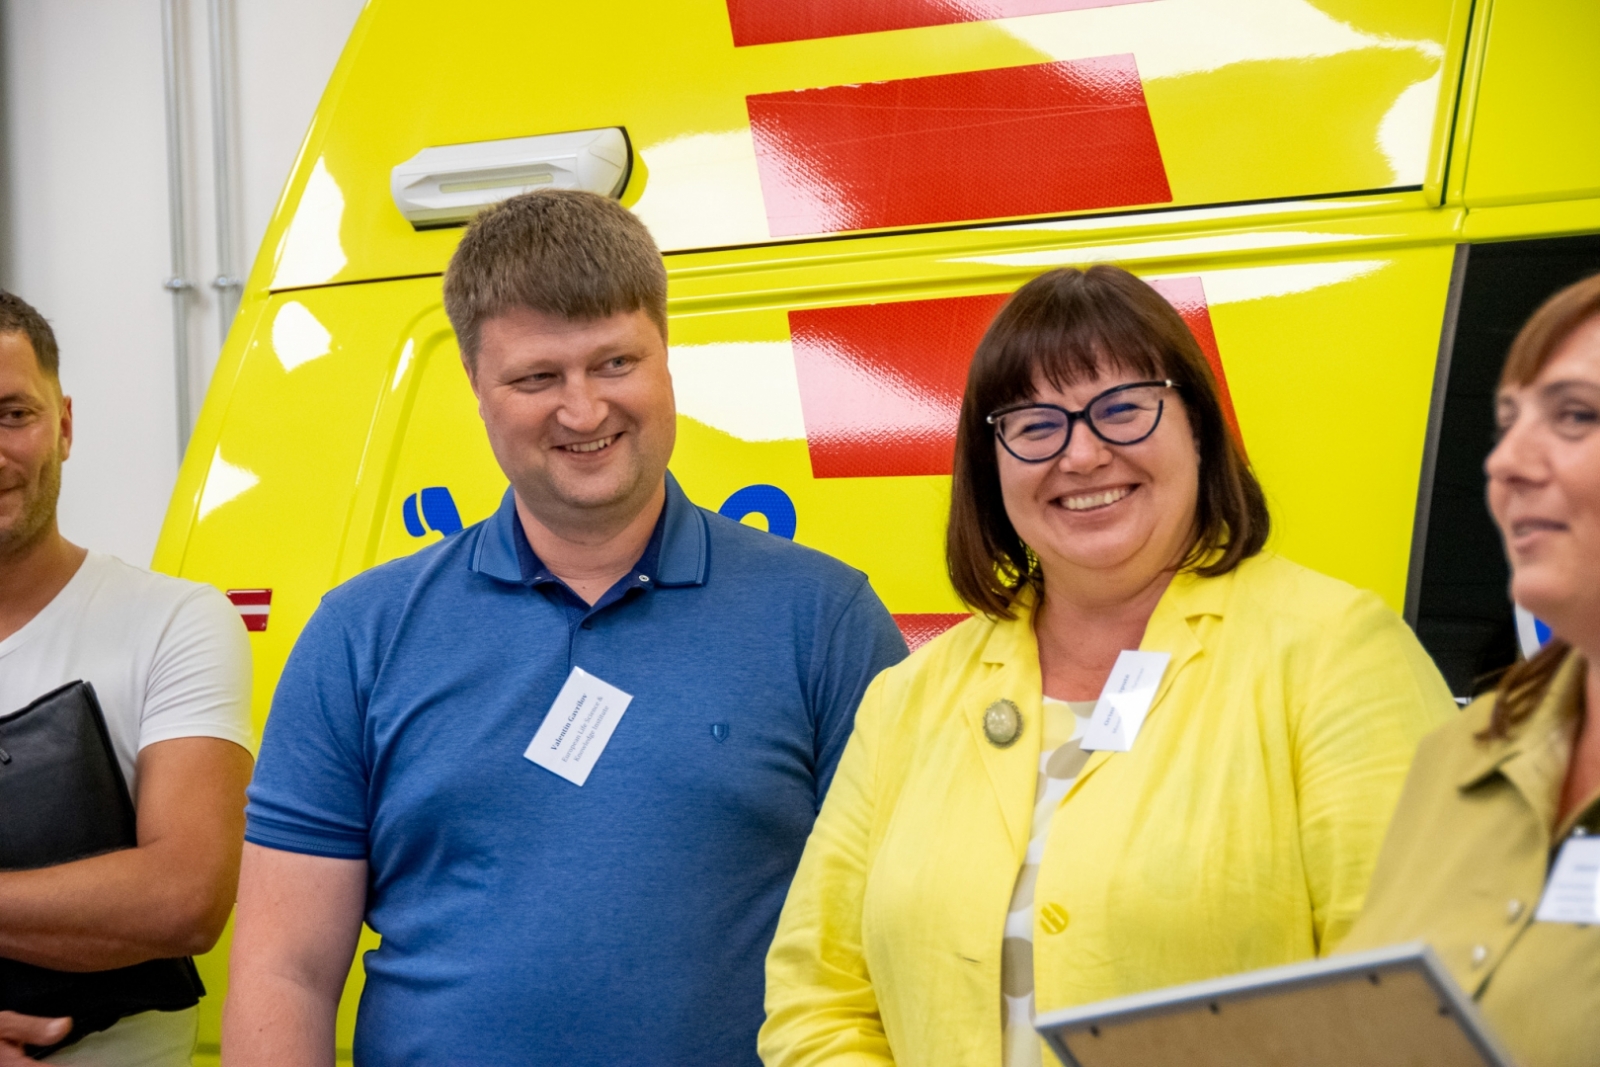 vīrietis zilā kreklā un sieviete dzeltenā žaketē smaida. Fonā dzeltens operatīvais auto